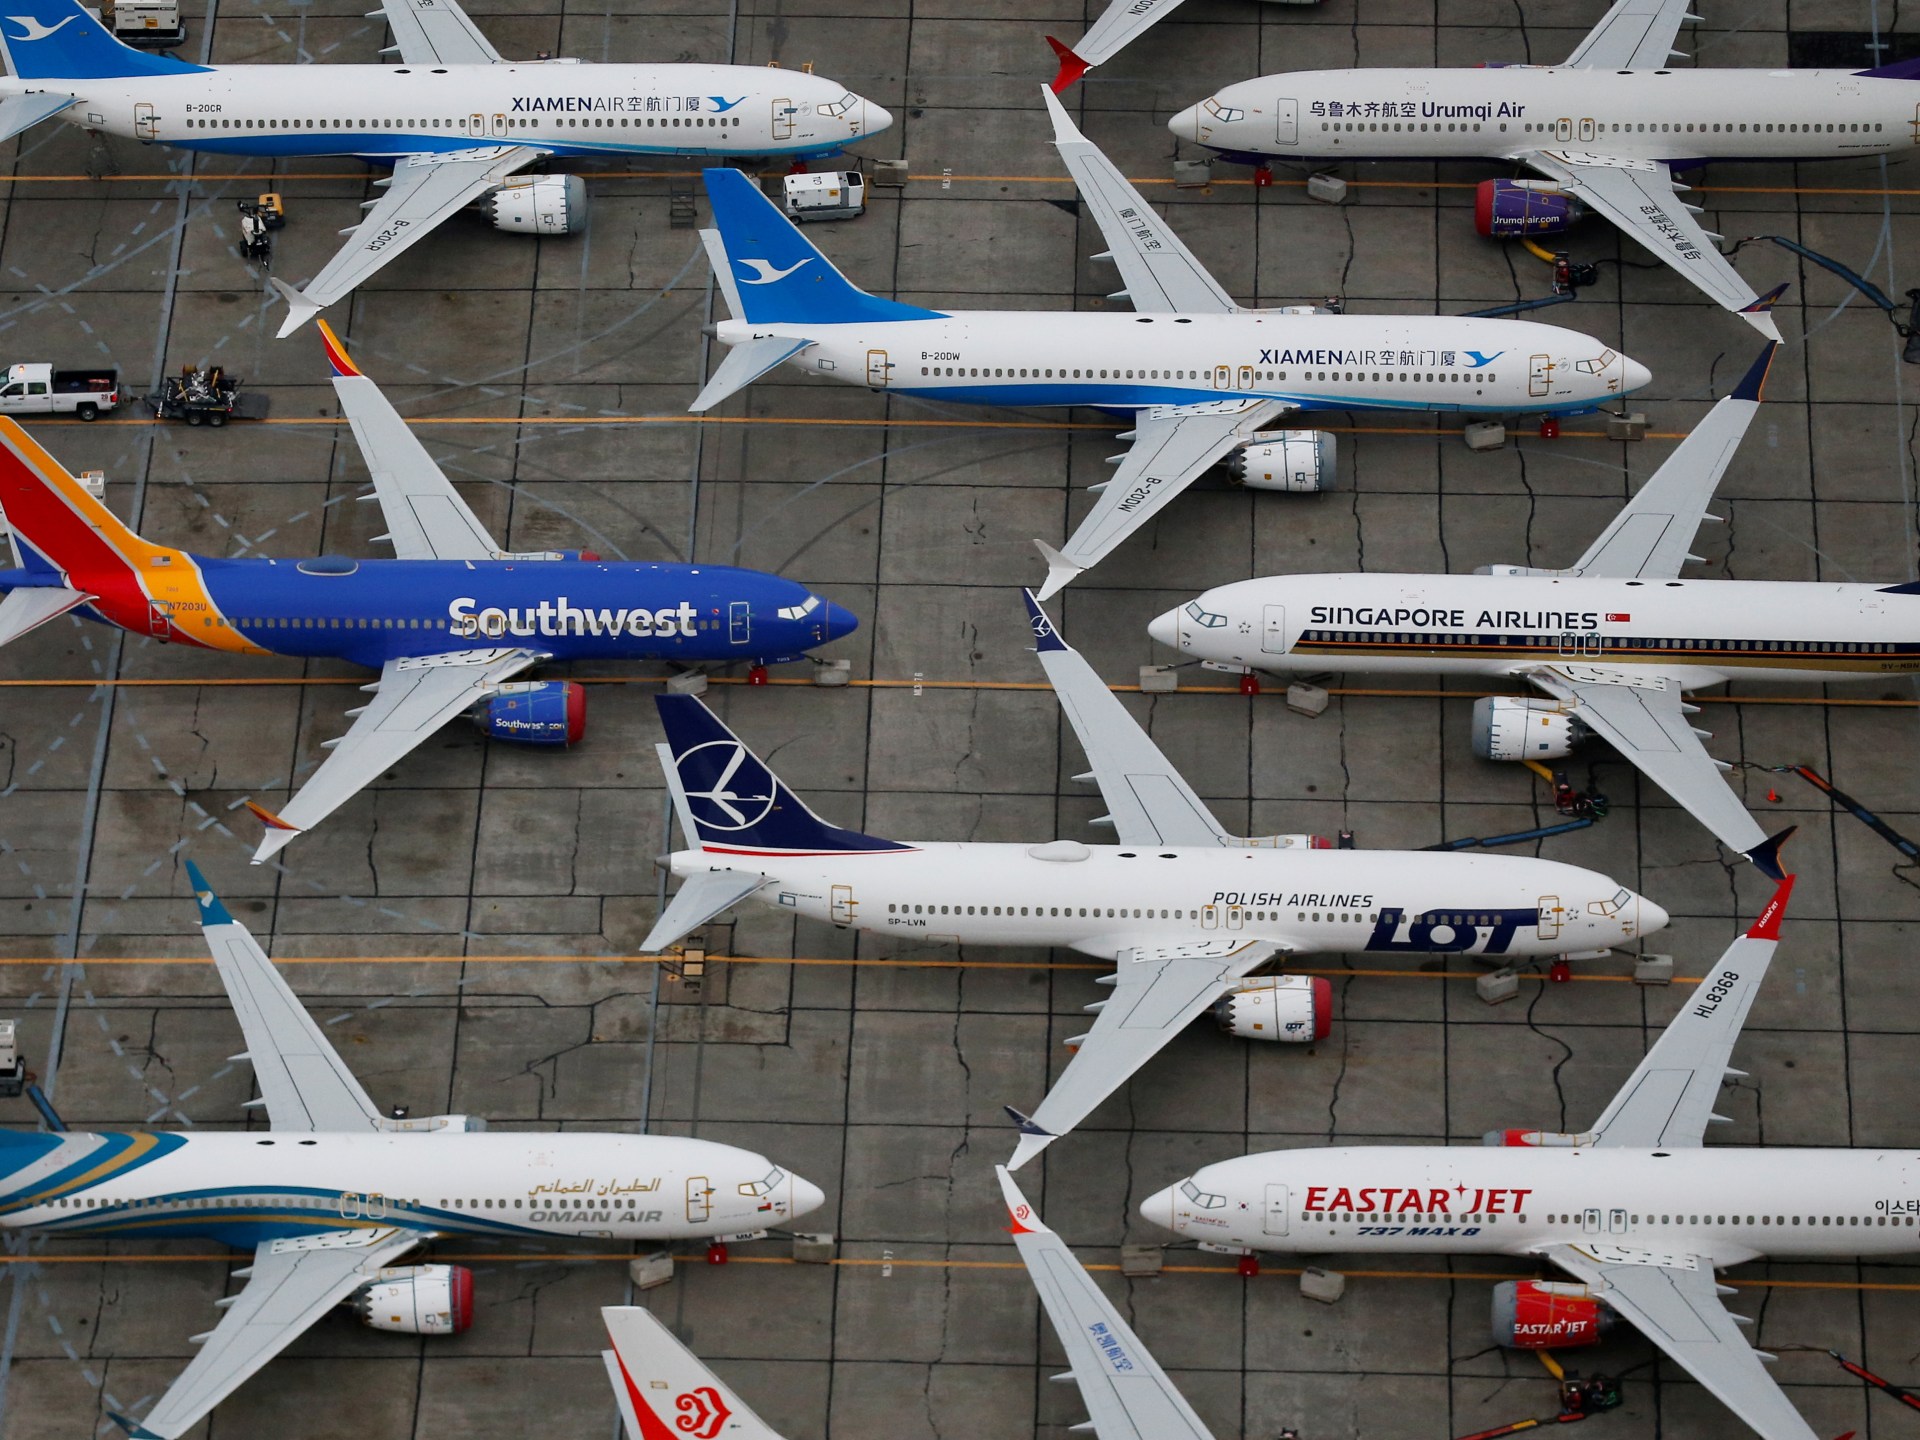 Boeing’in yaşamış olduğu sıkıntılar, Endonezyalı kaza kurbanlarının aileleri için acı dolu anıları canlandırıyor